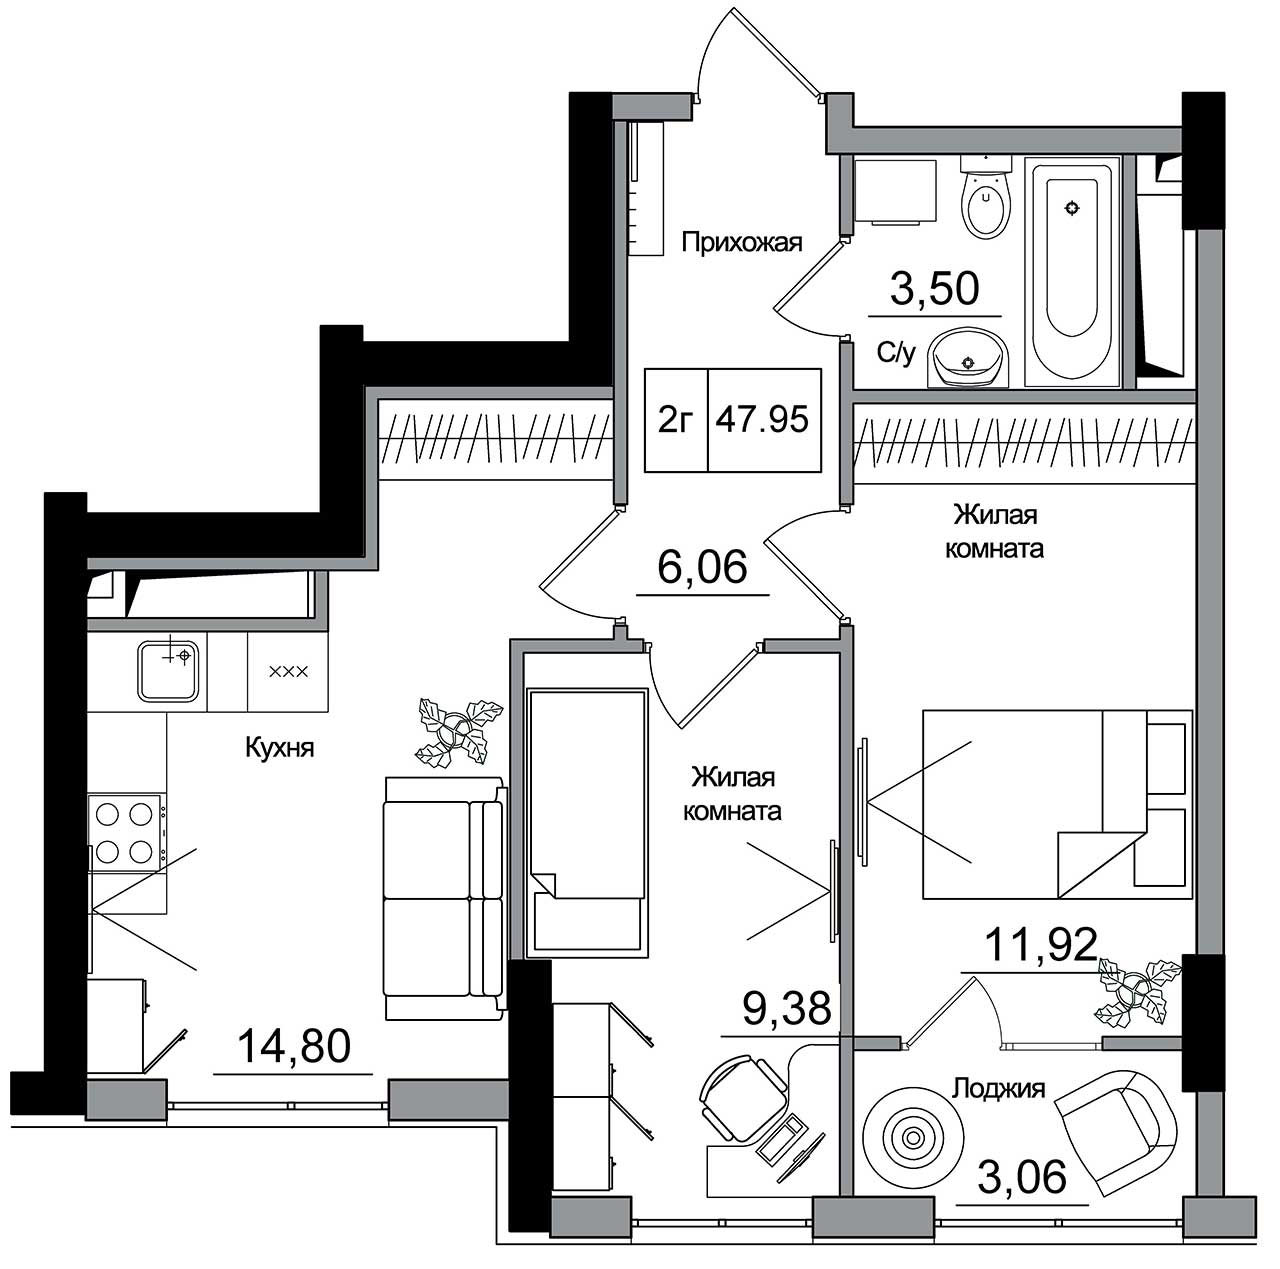 Планування 2-к квартира площею 47.95м2, AB-16-12/00014.